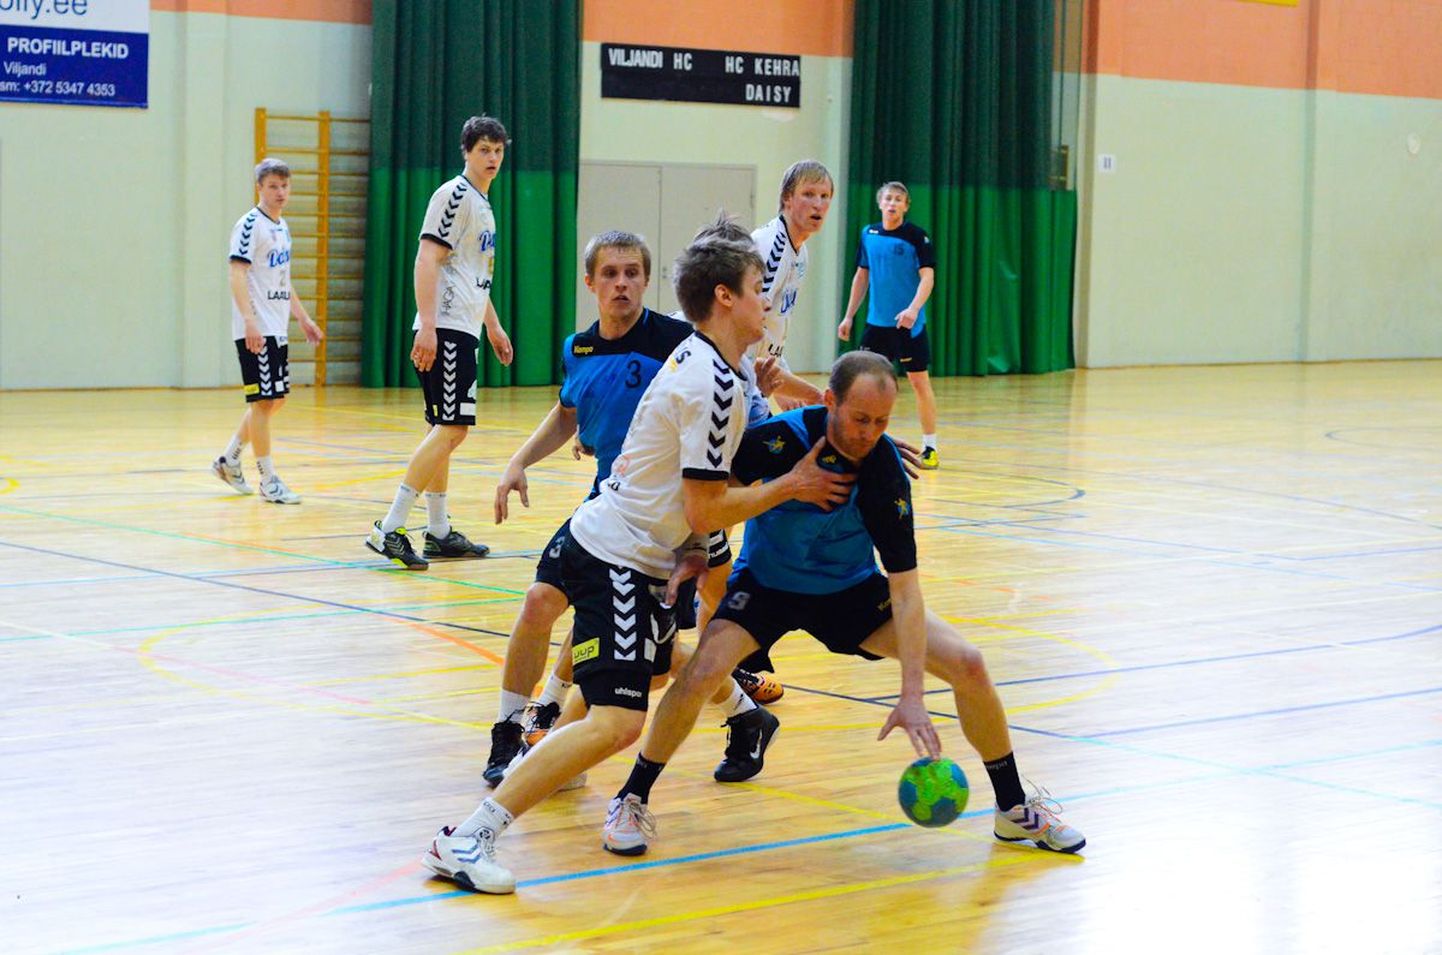 Viljandi käsipallimeeskond pidi pühapäeval tunnistama HC Kehra / Daisy paremust.